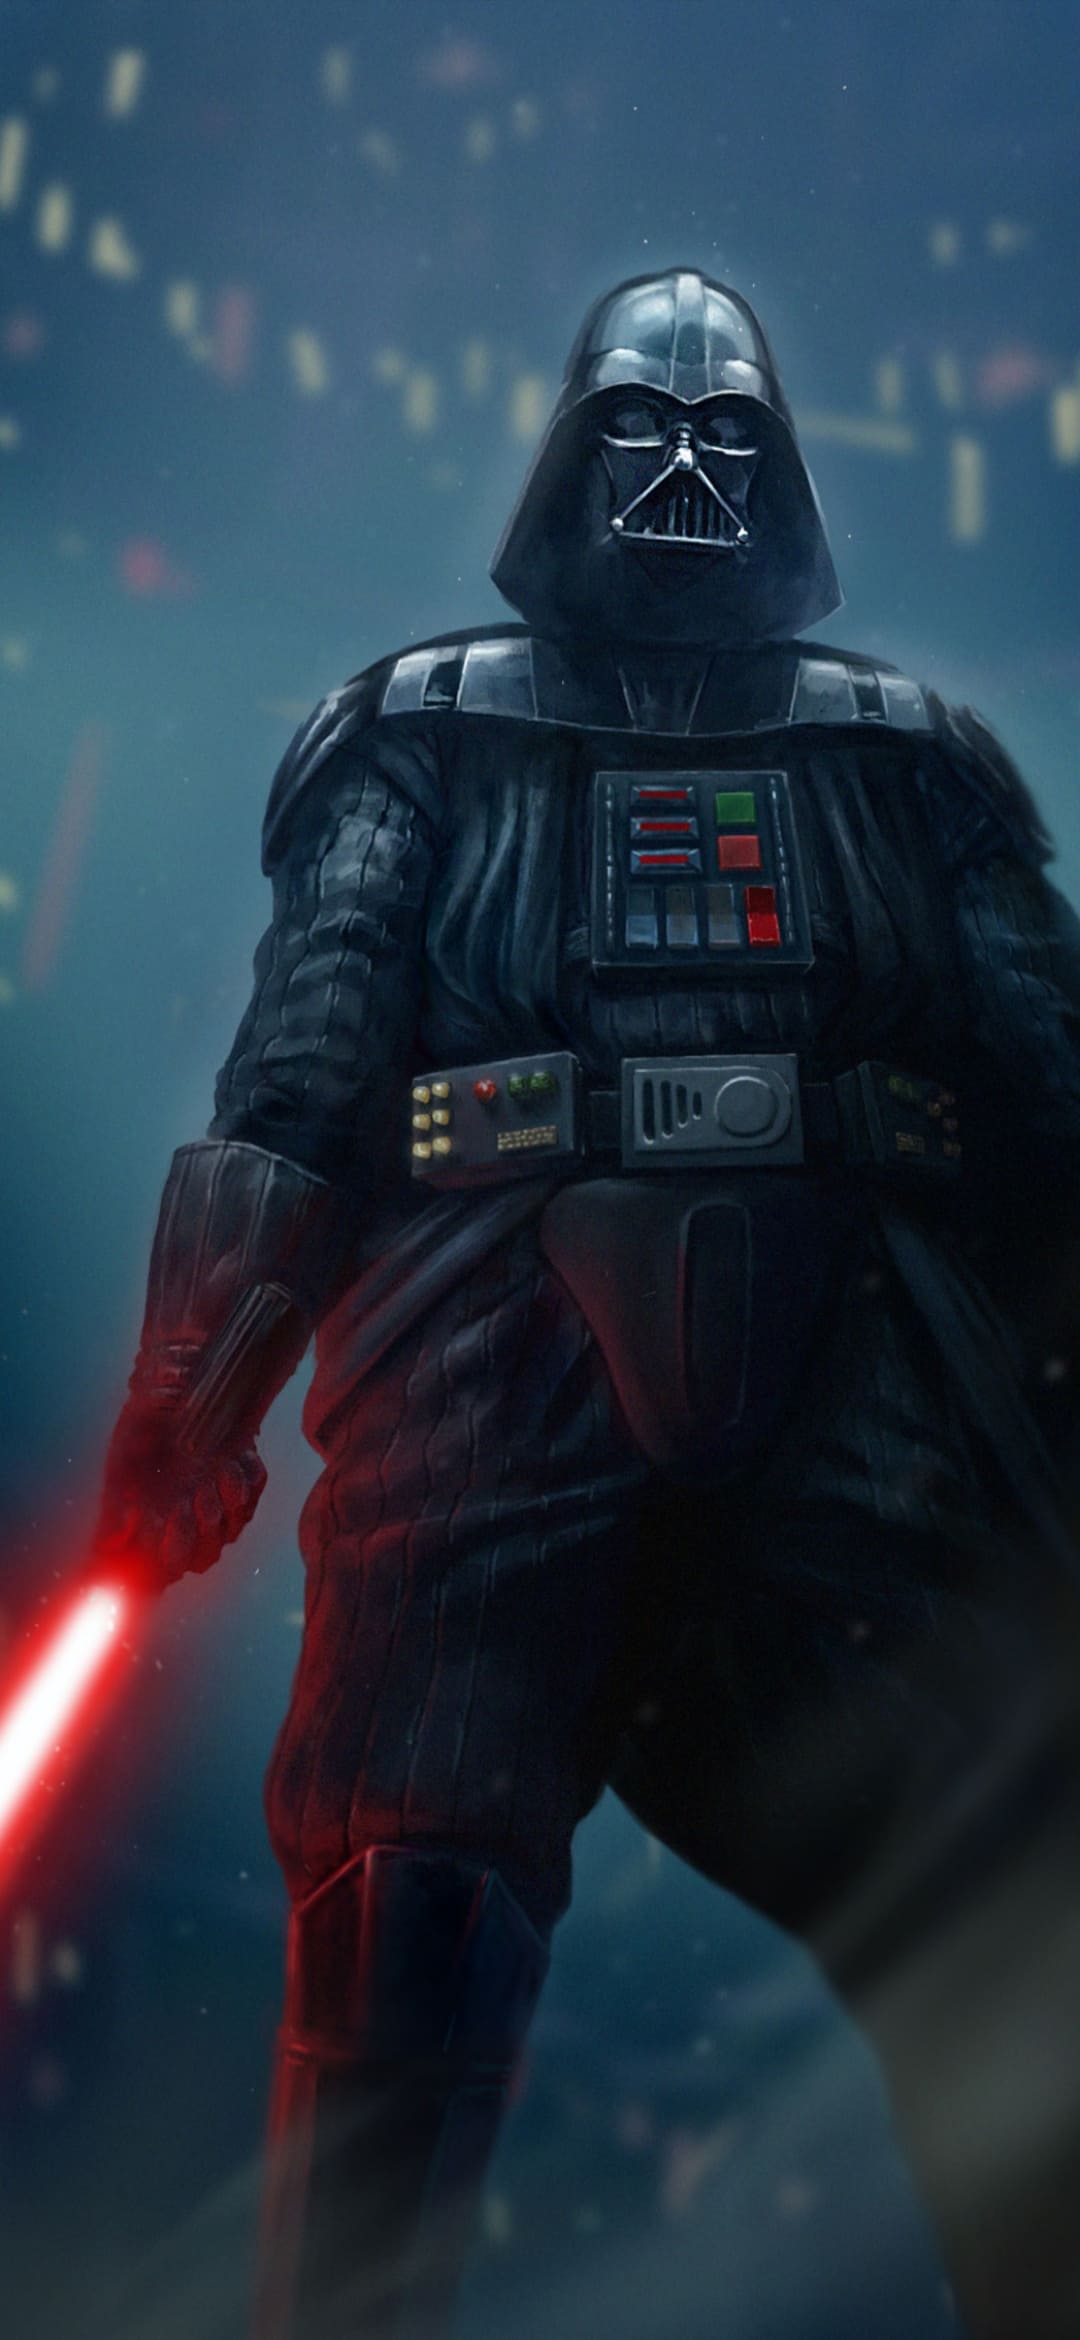 Darth Vader Background Images